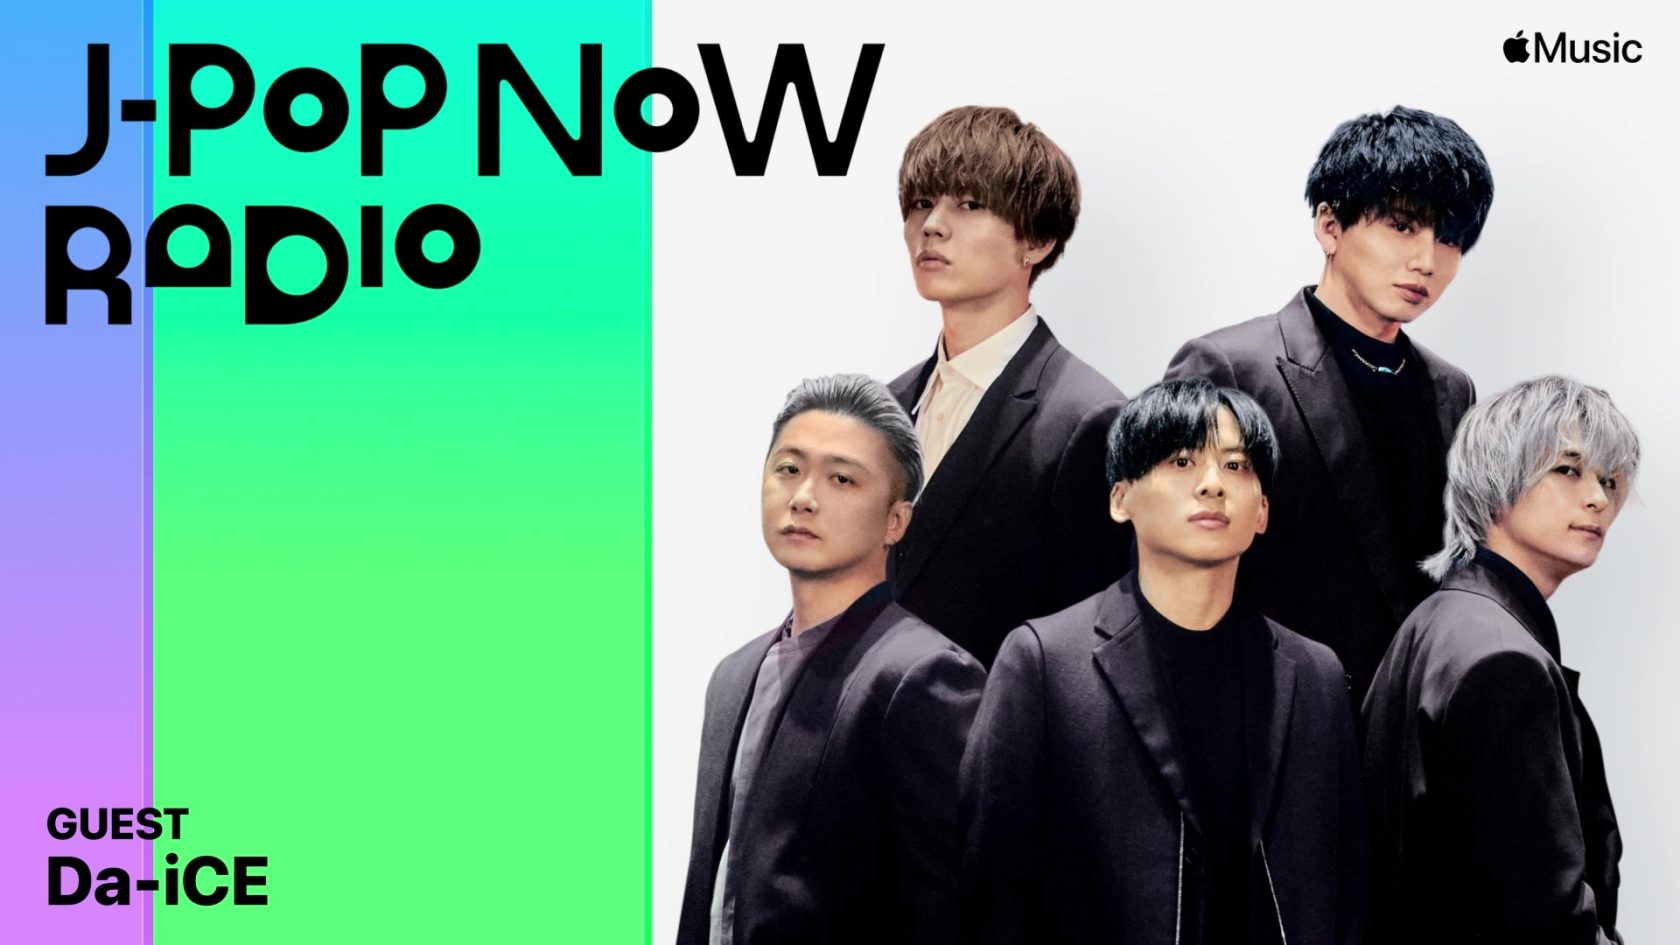 Da-iCEの工藤大輝と花村想太がラジオ「J-Pop Now Radio」最新回にゲストで登場 最新アルバム「SCENE」のトークを展開